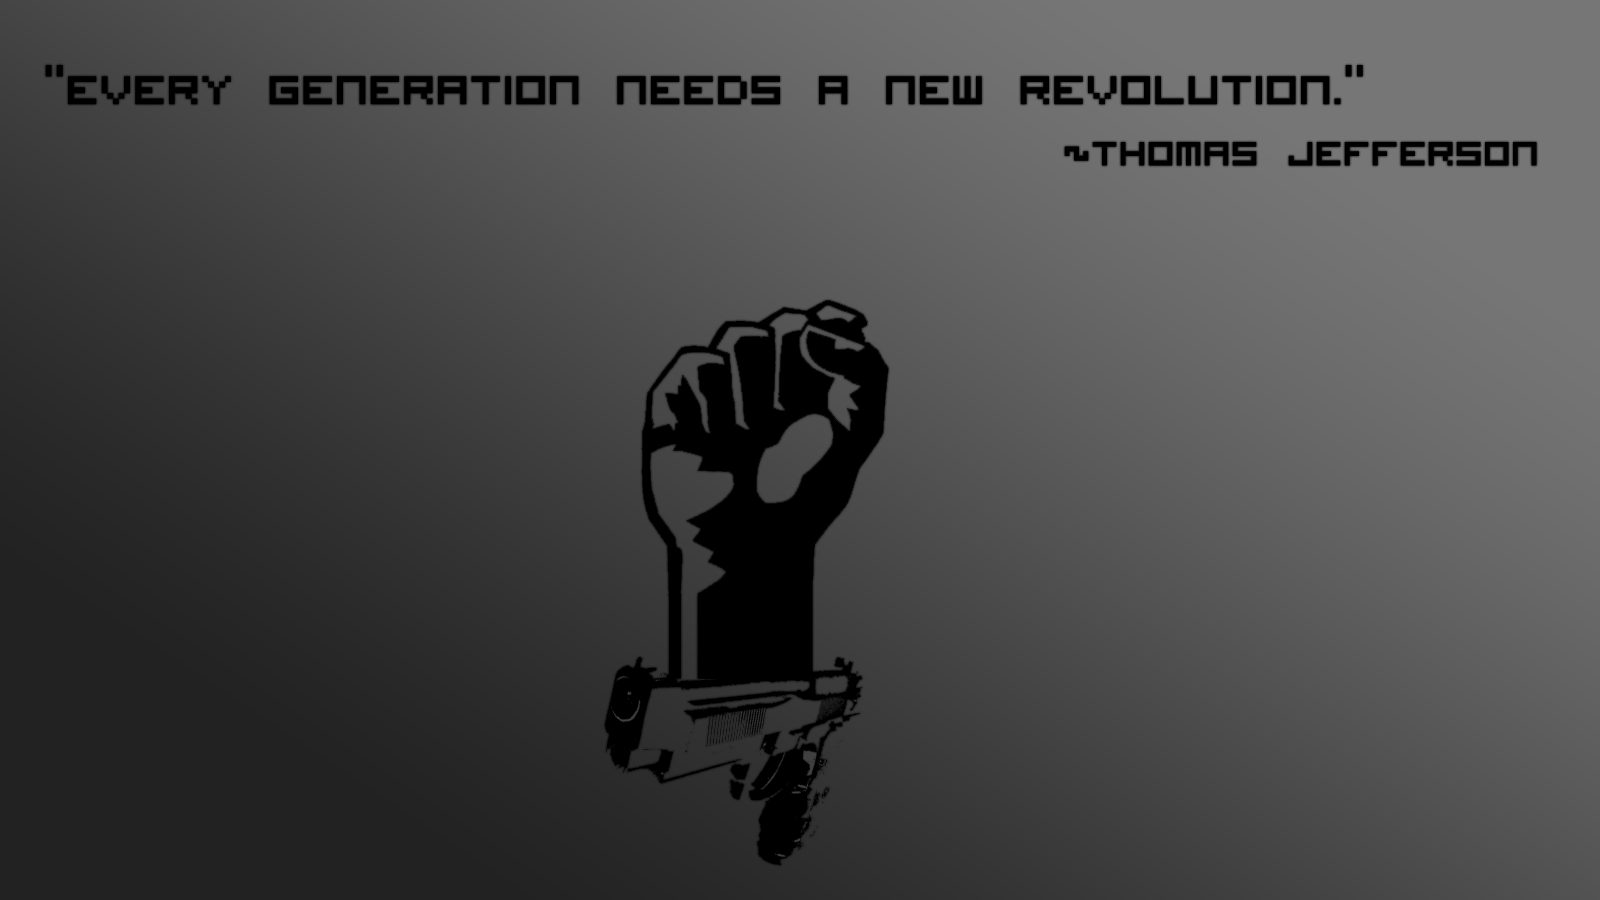 Revolutionary Quotes. QuotesGram